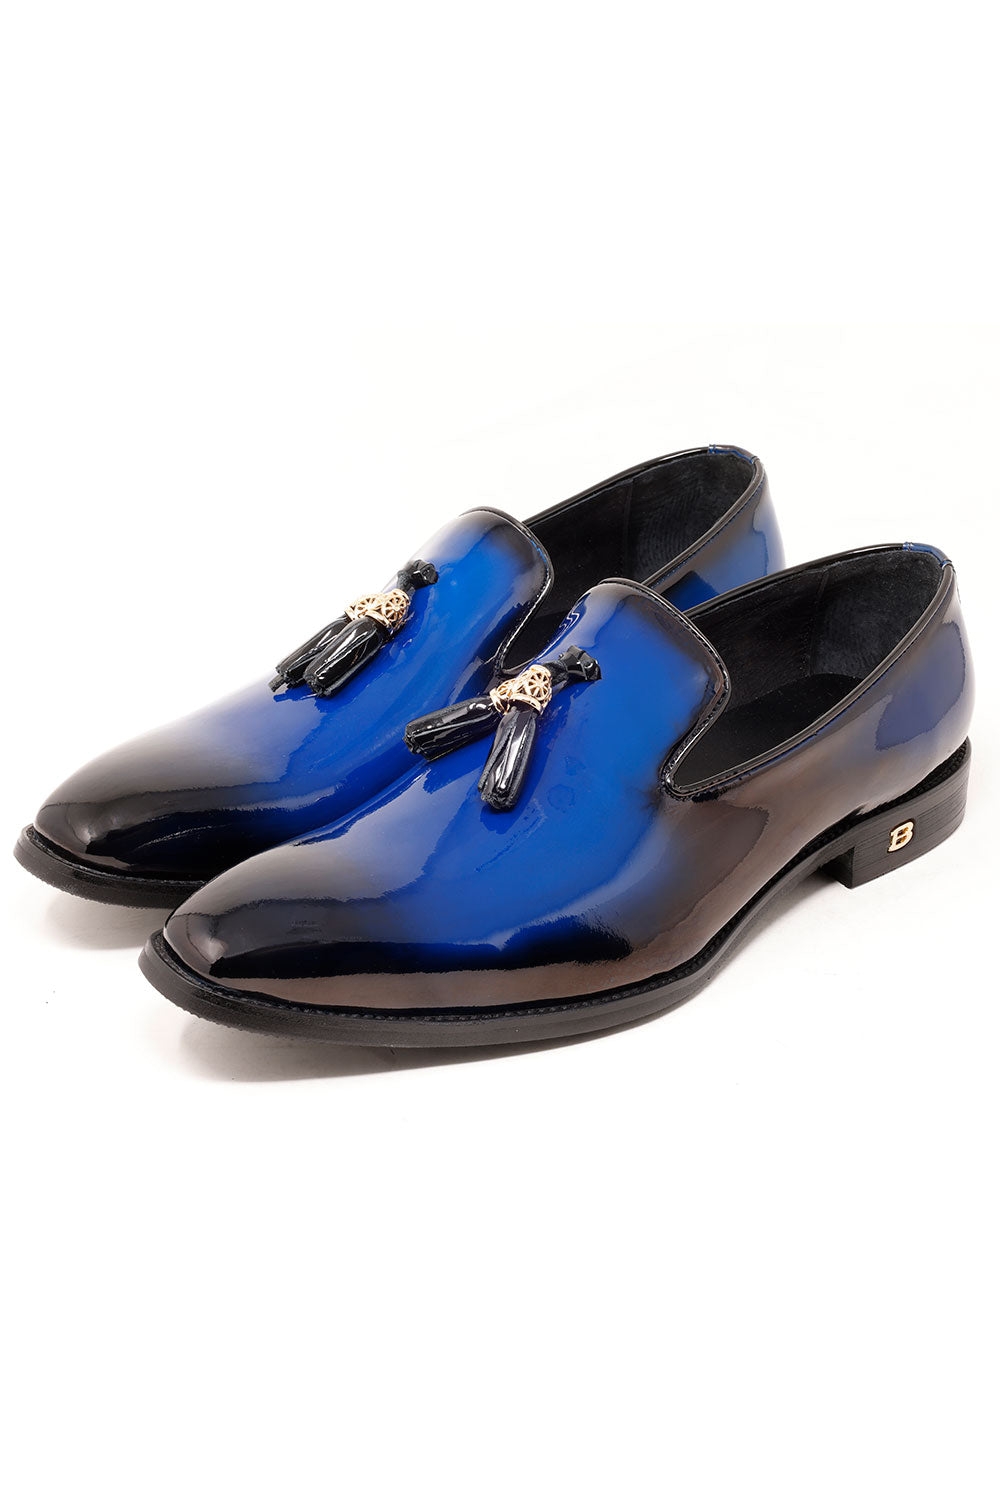 Barabas Men's Shiny Design Tassel Slip On Leather Loafer Shoes 3SH39 Blue